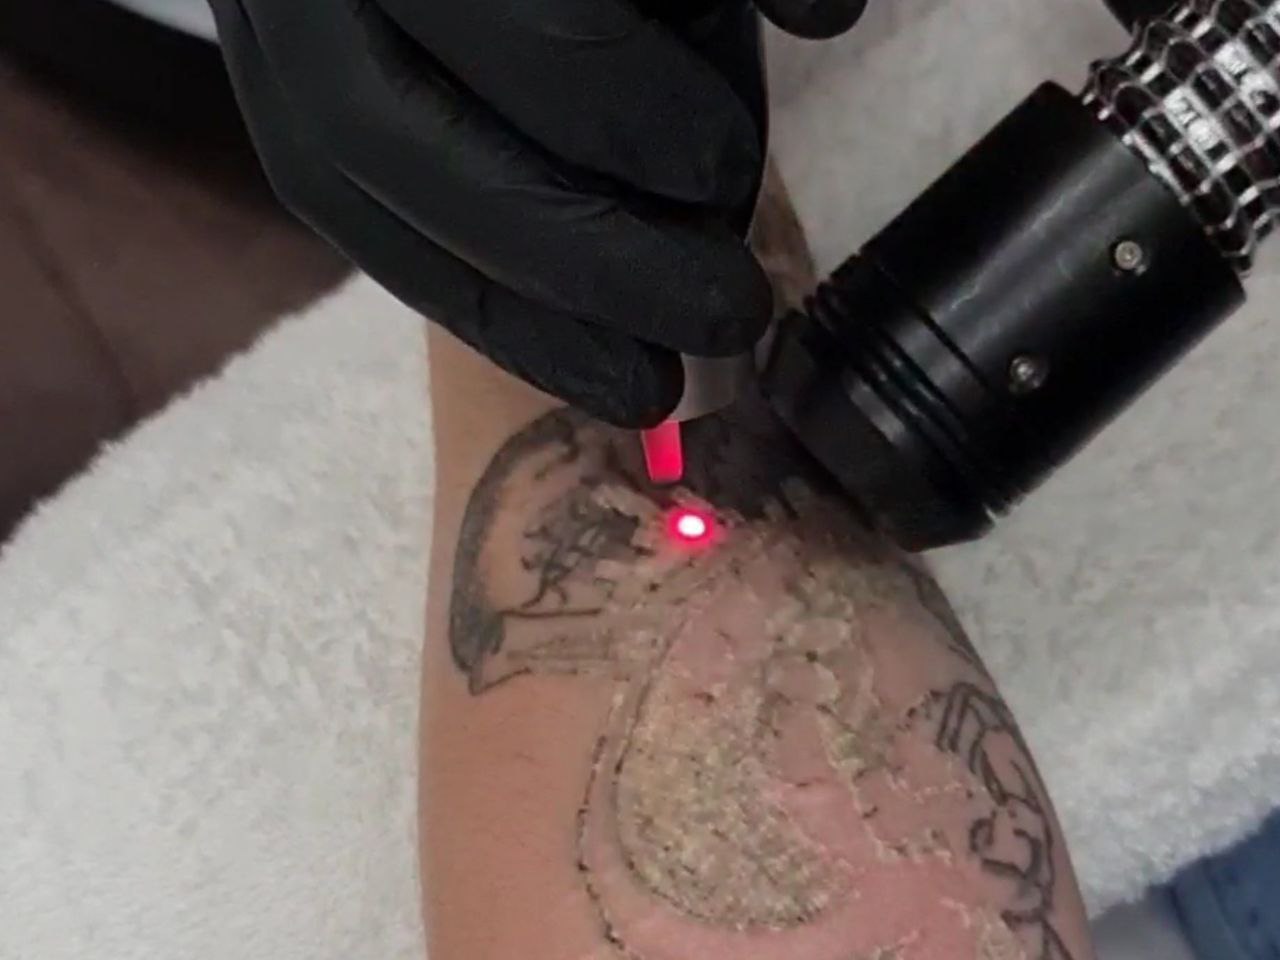 Как вывести тату: методы и способы удаления татуировок лазером?